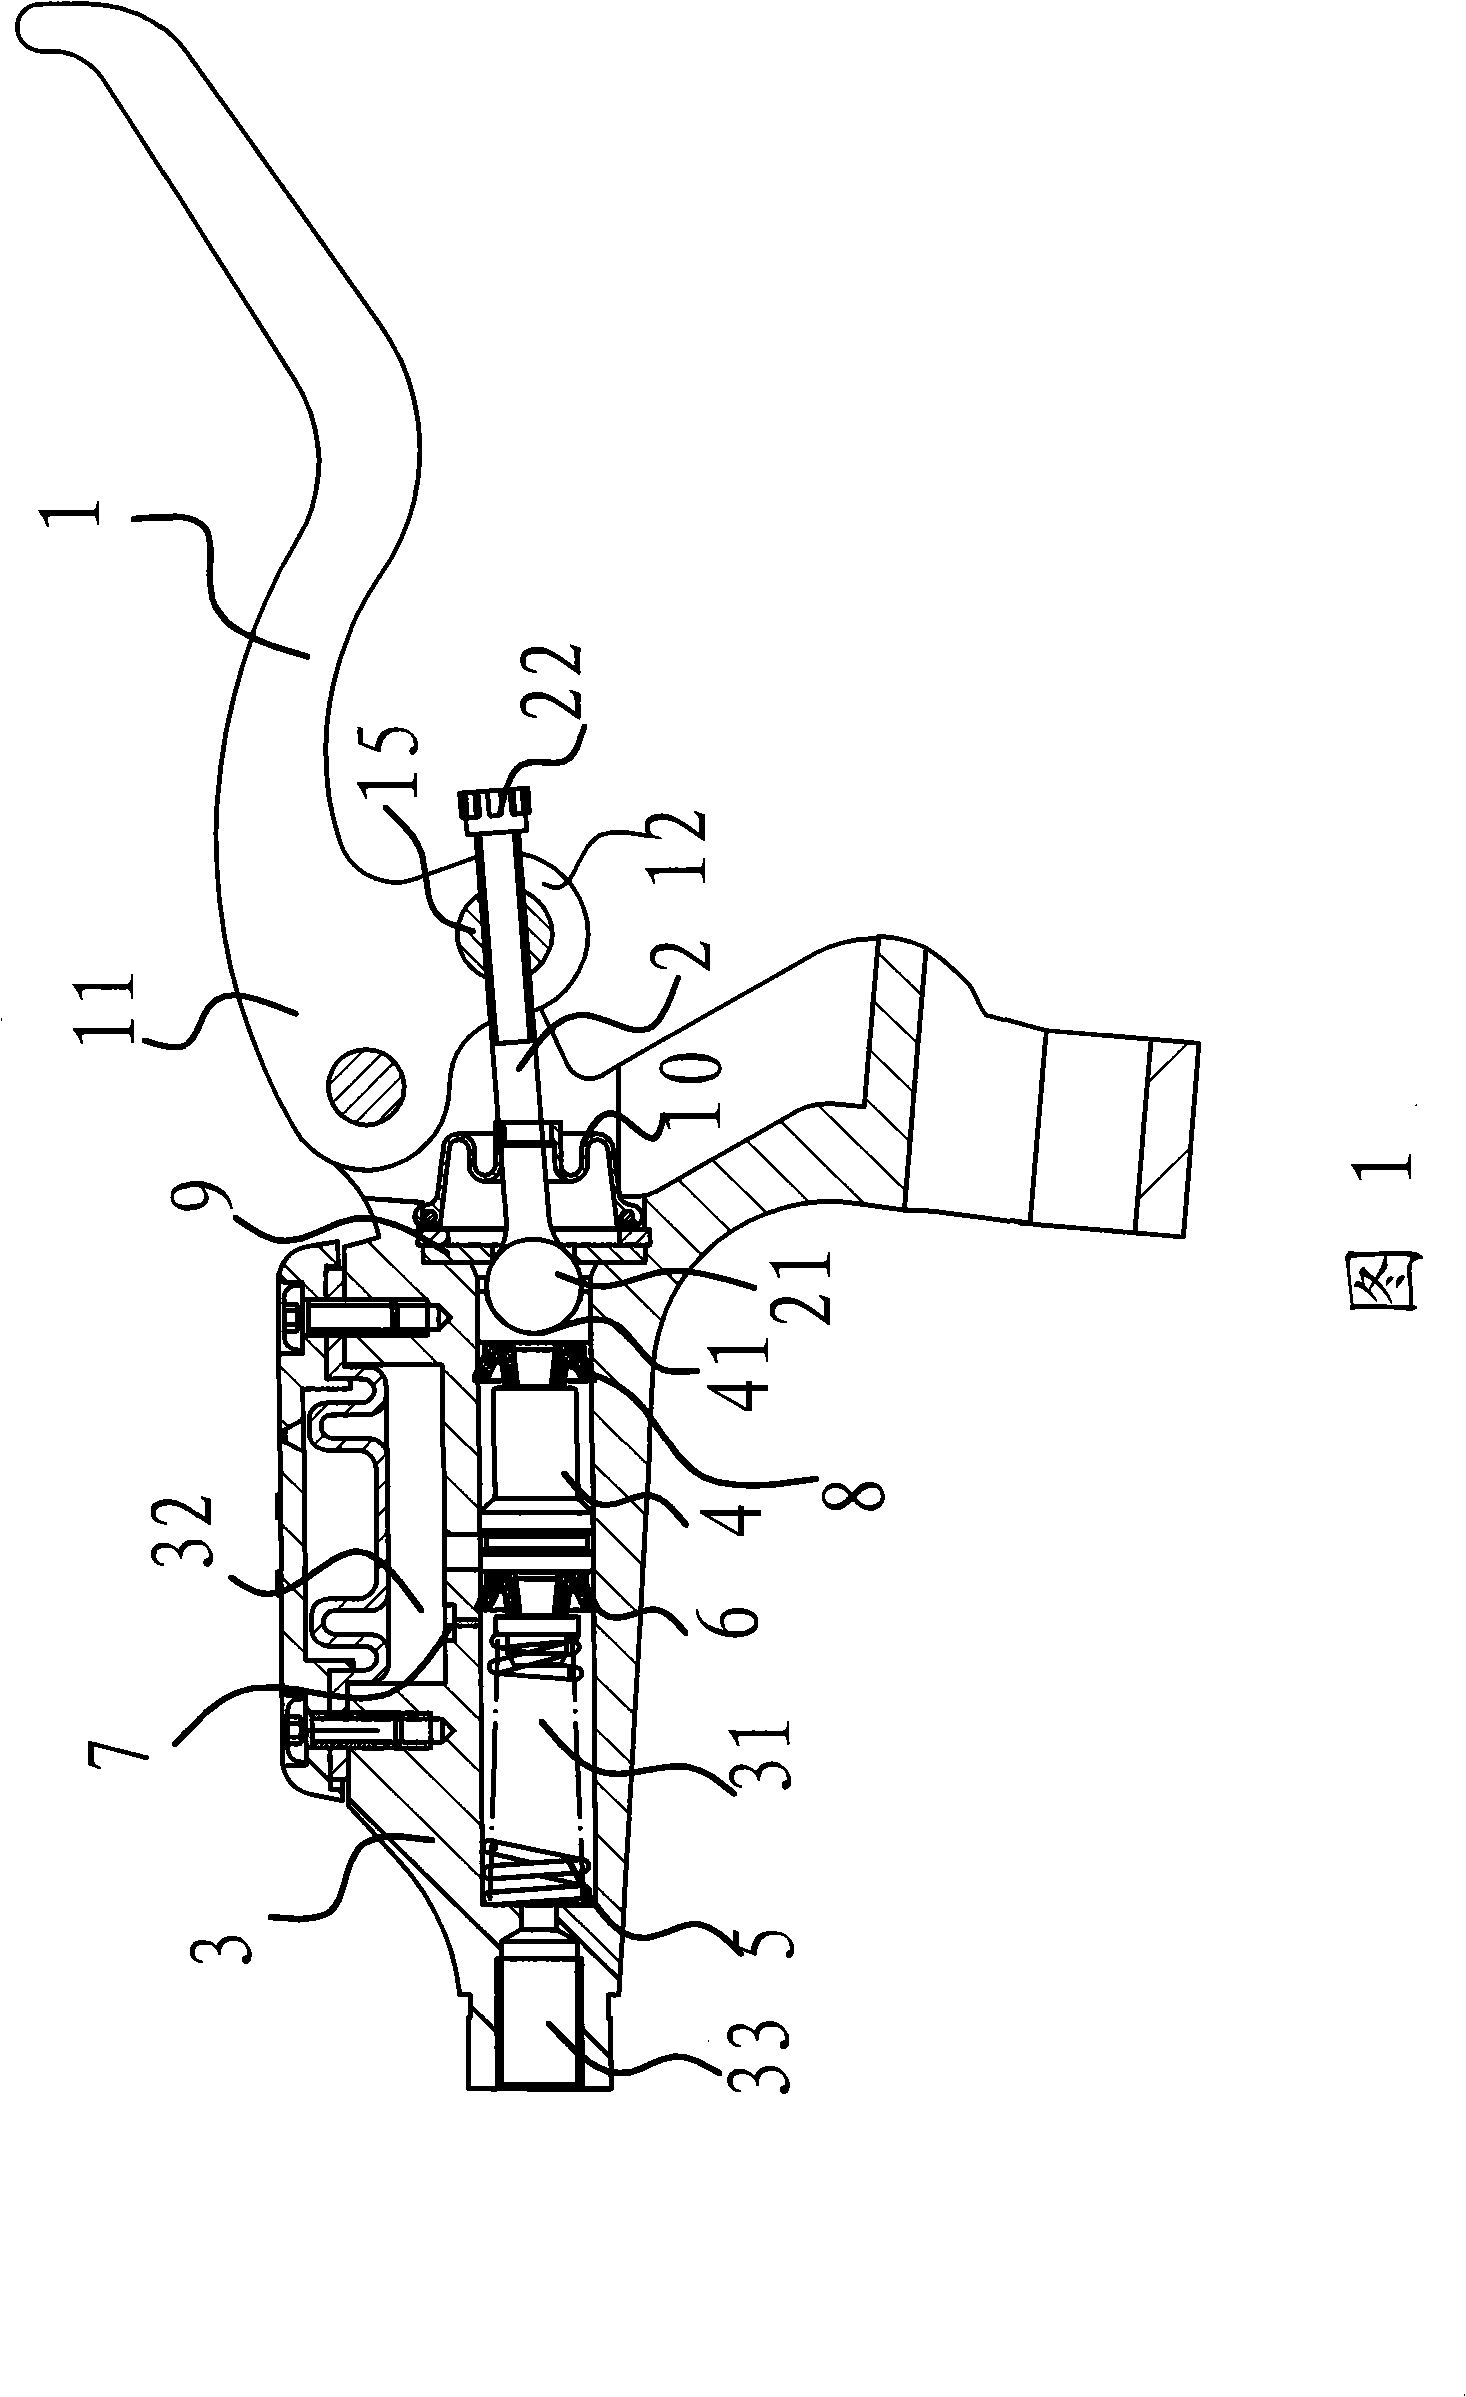 Adjusting mechanism for brake handle